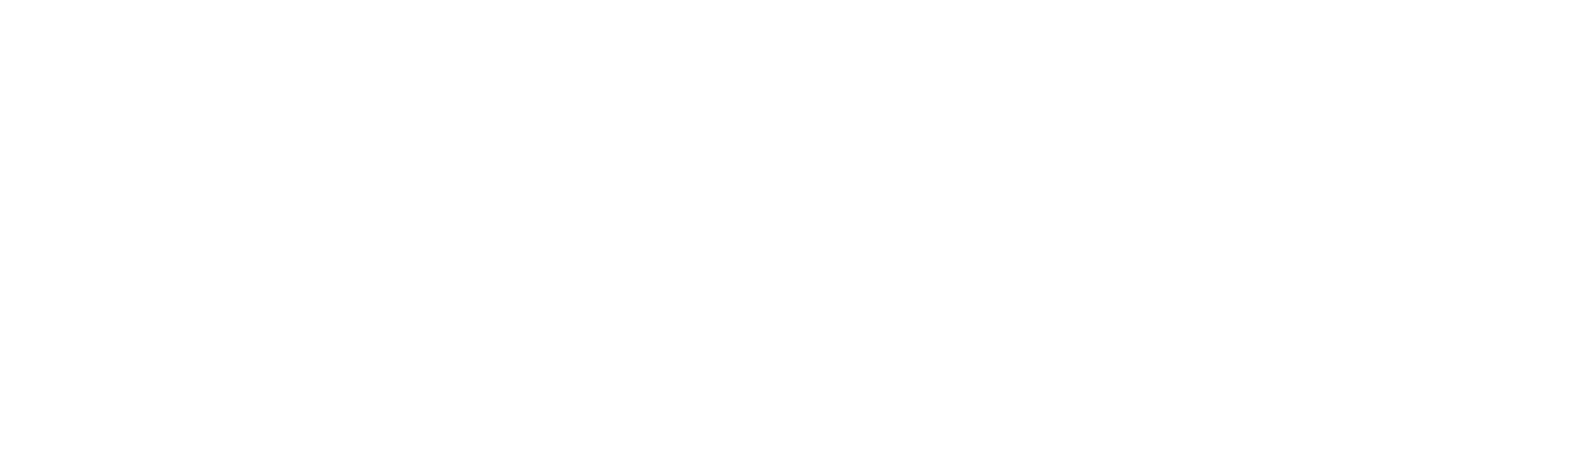 Enova International
 logo large for dark backgrounds (transparent PNG)